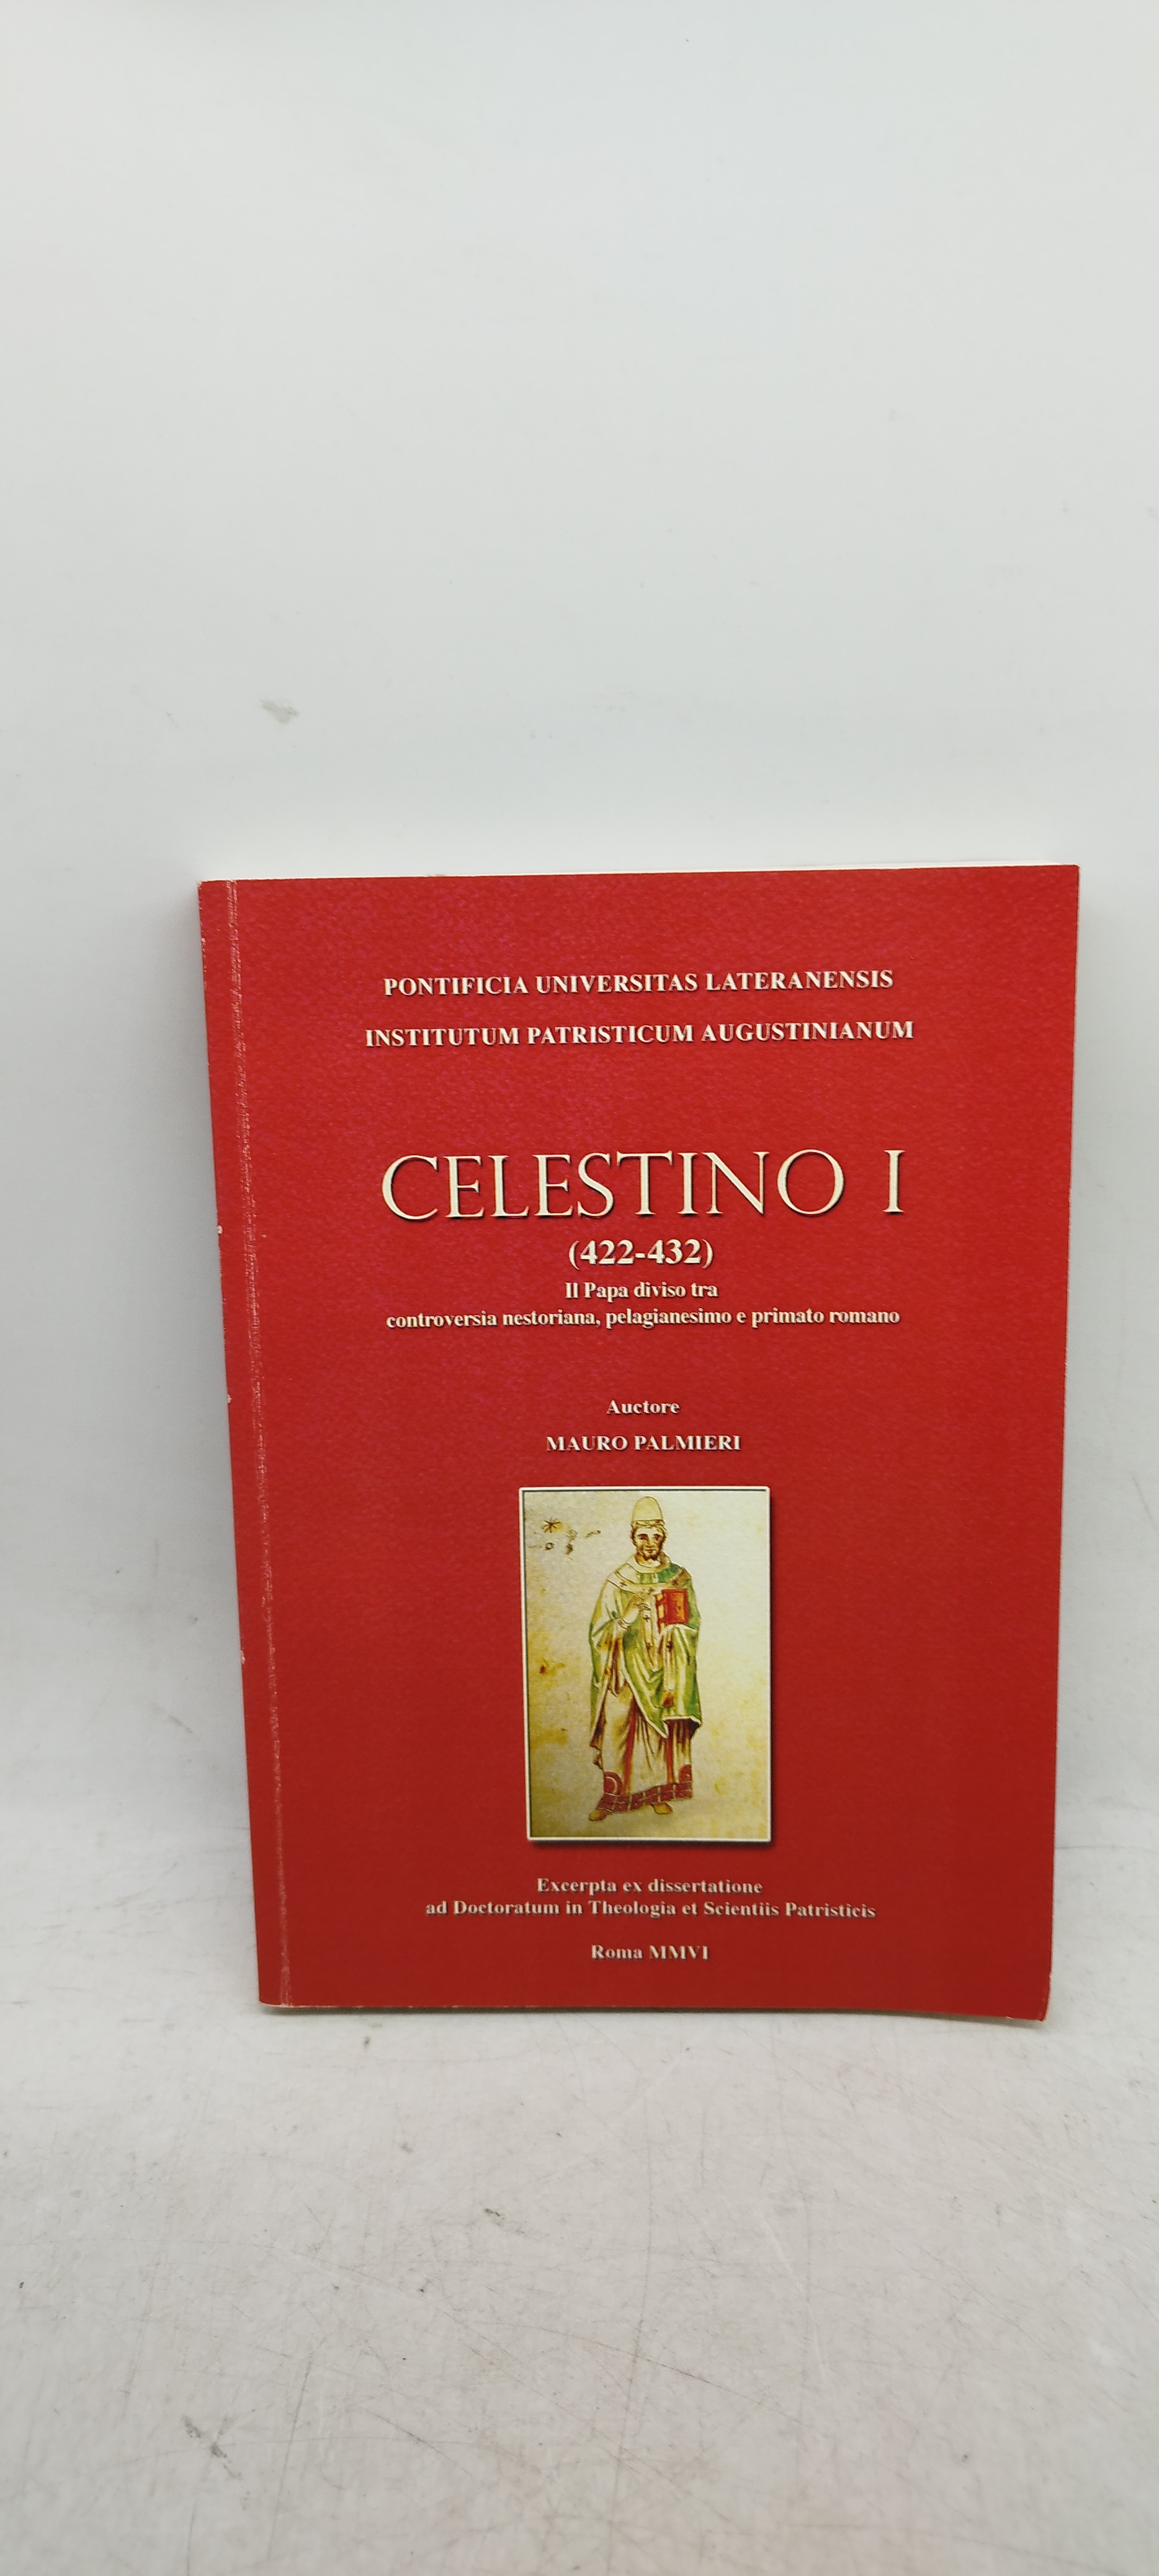 celestino I 422-432 il papa diviso tra controversia pelagianesimo primato